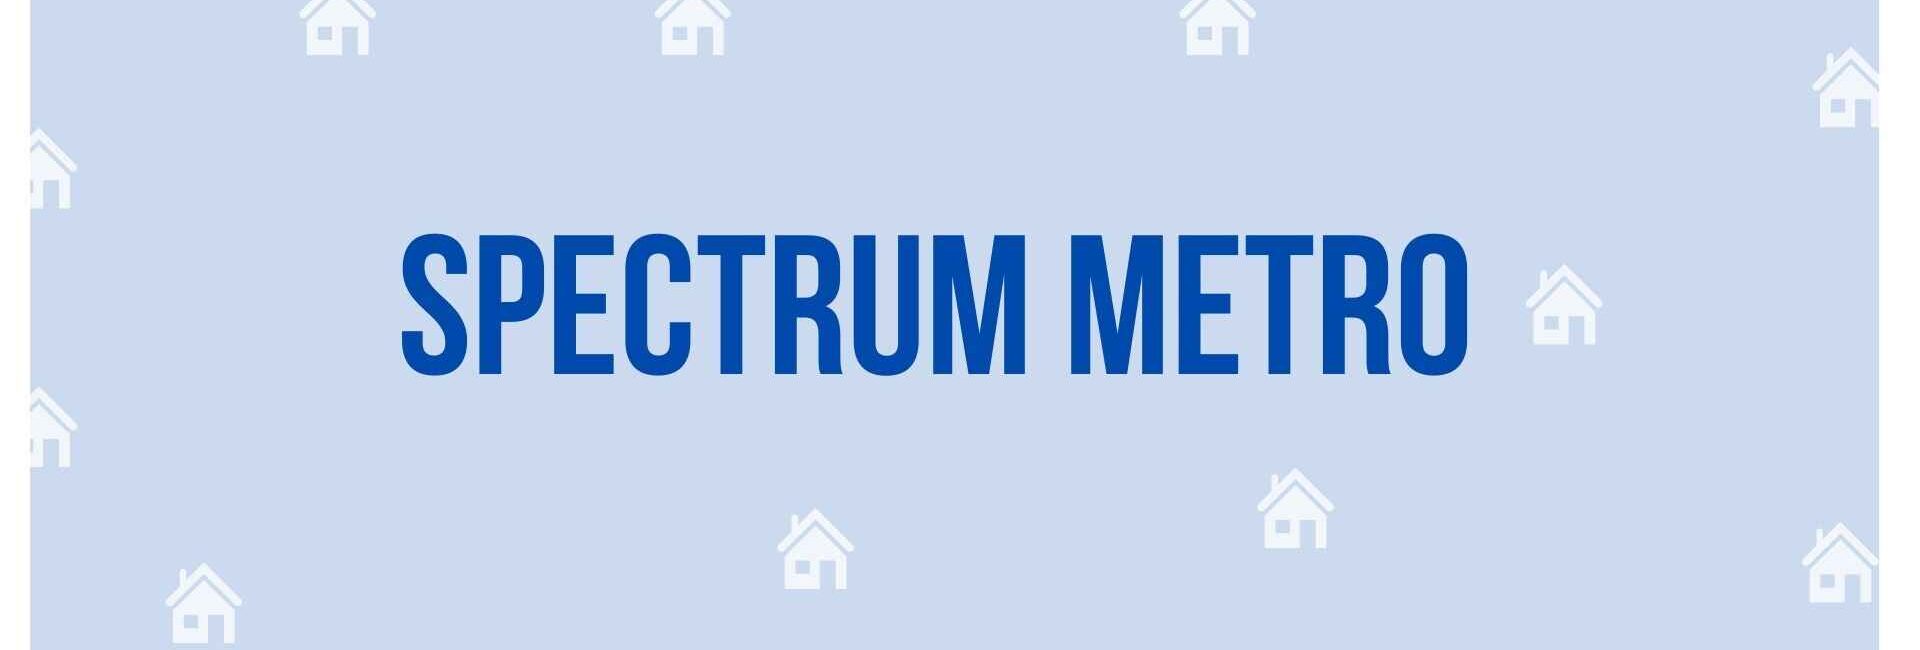 Spectrum Metro - Property Dealer in Noida